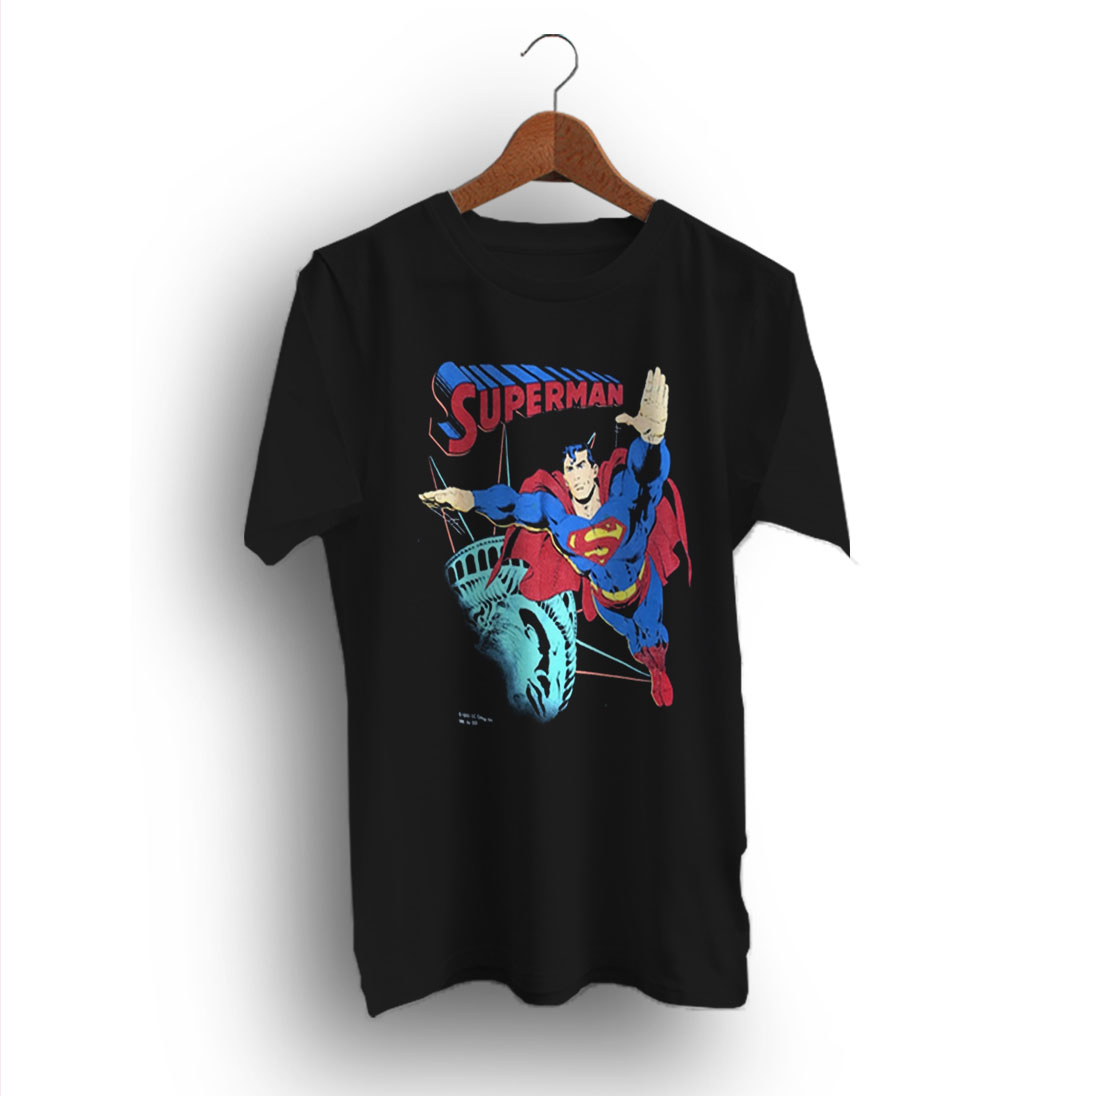 Stolthed Kollisionskursus Række ud Superman Statue of Liberty Black Vintage 90s T-Shirt - Design Bigvero